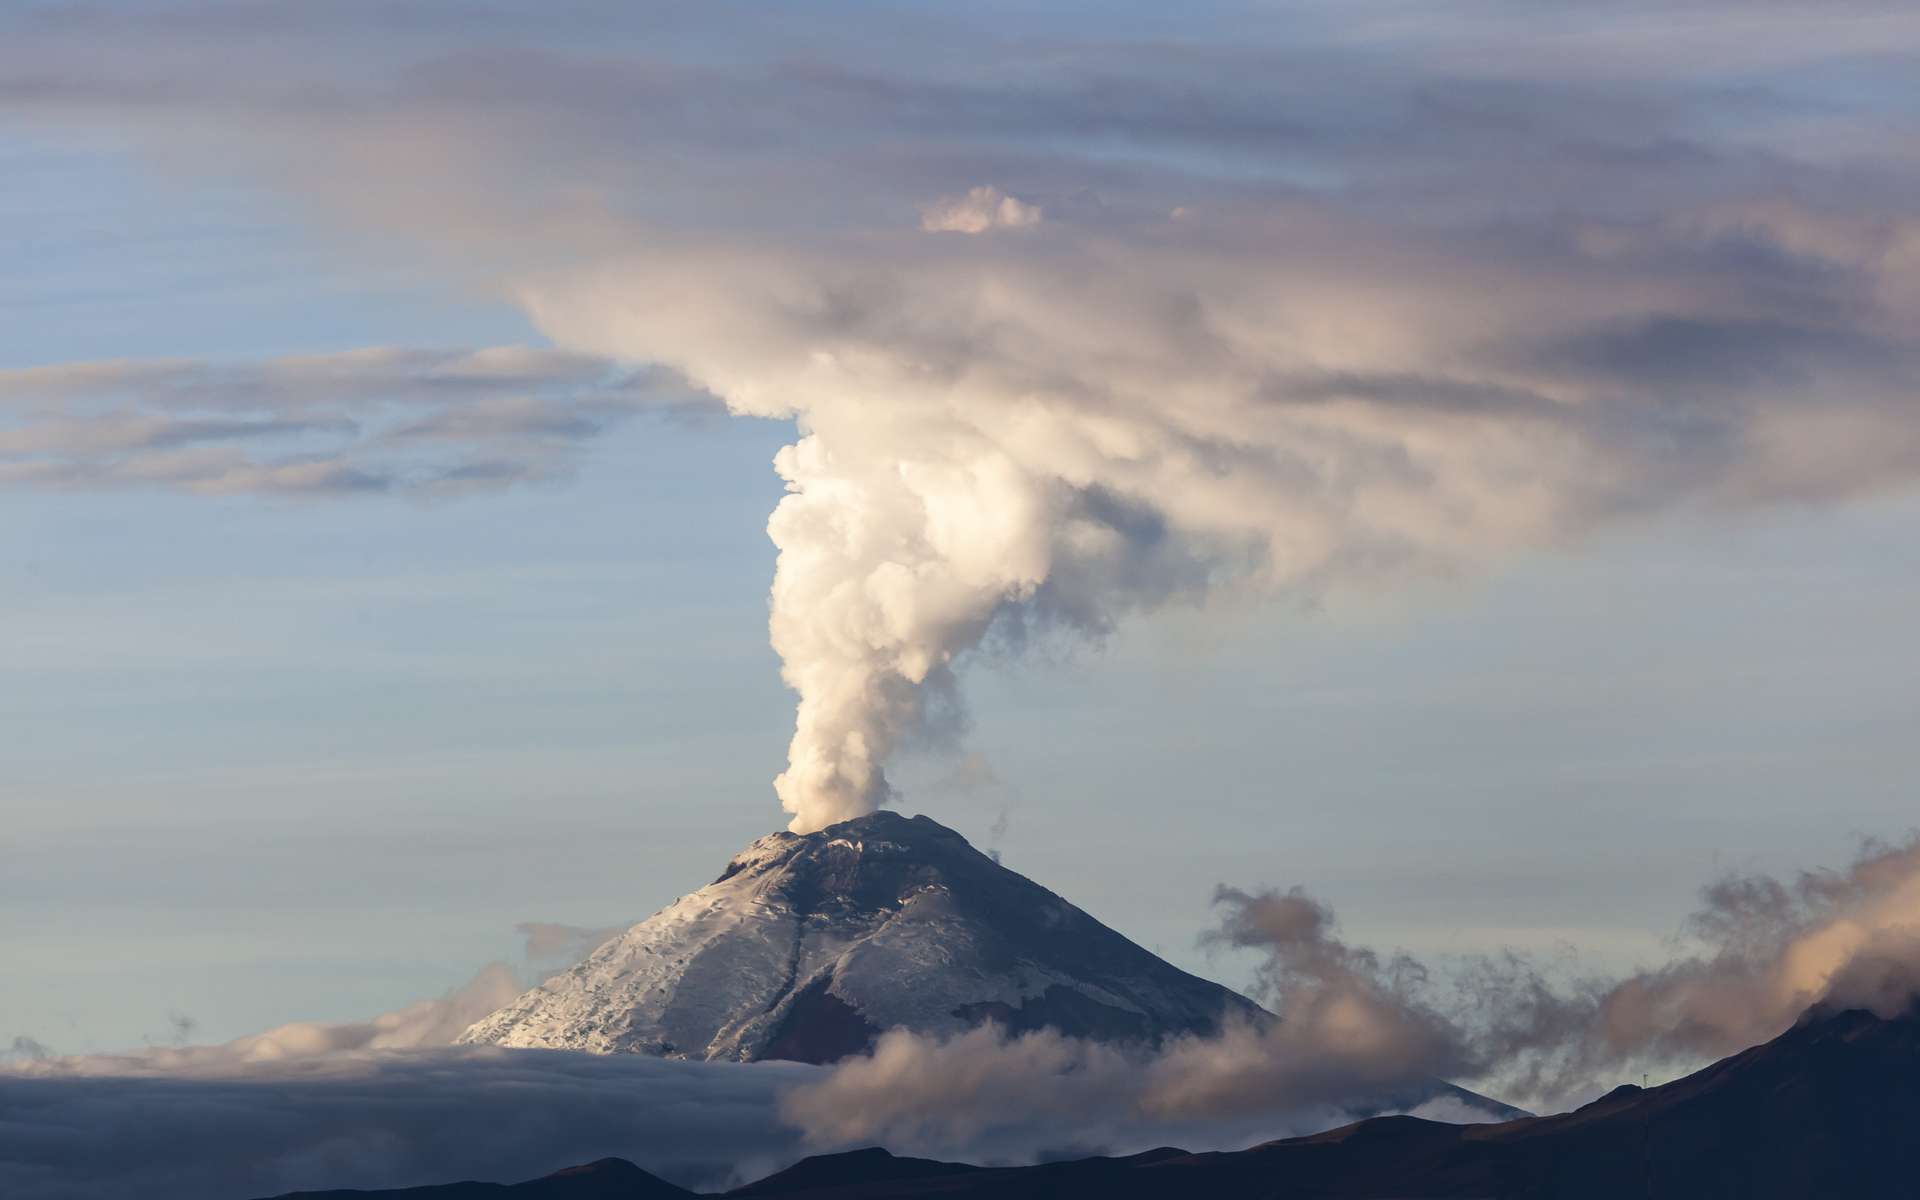 Les éruptions volcaniques sont en partie contrôlées par la quantité d’eau présente dans le magma